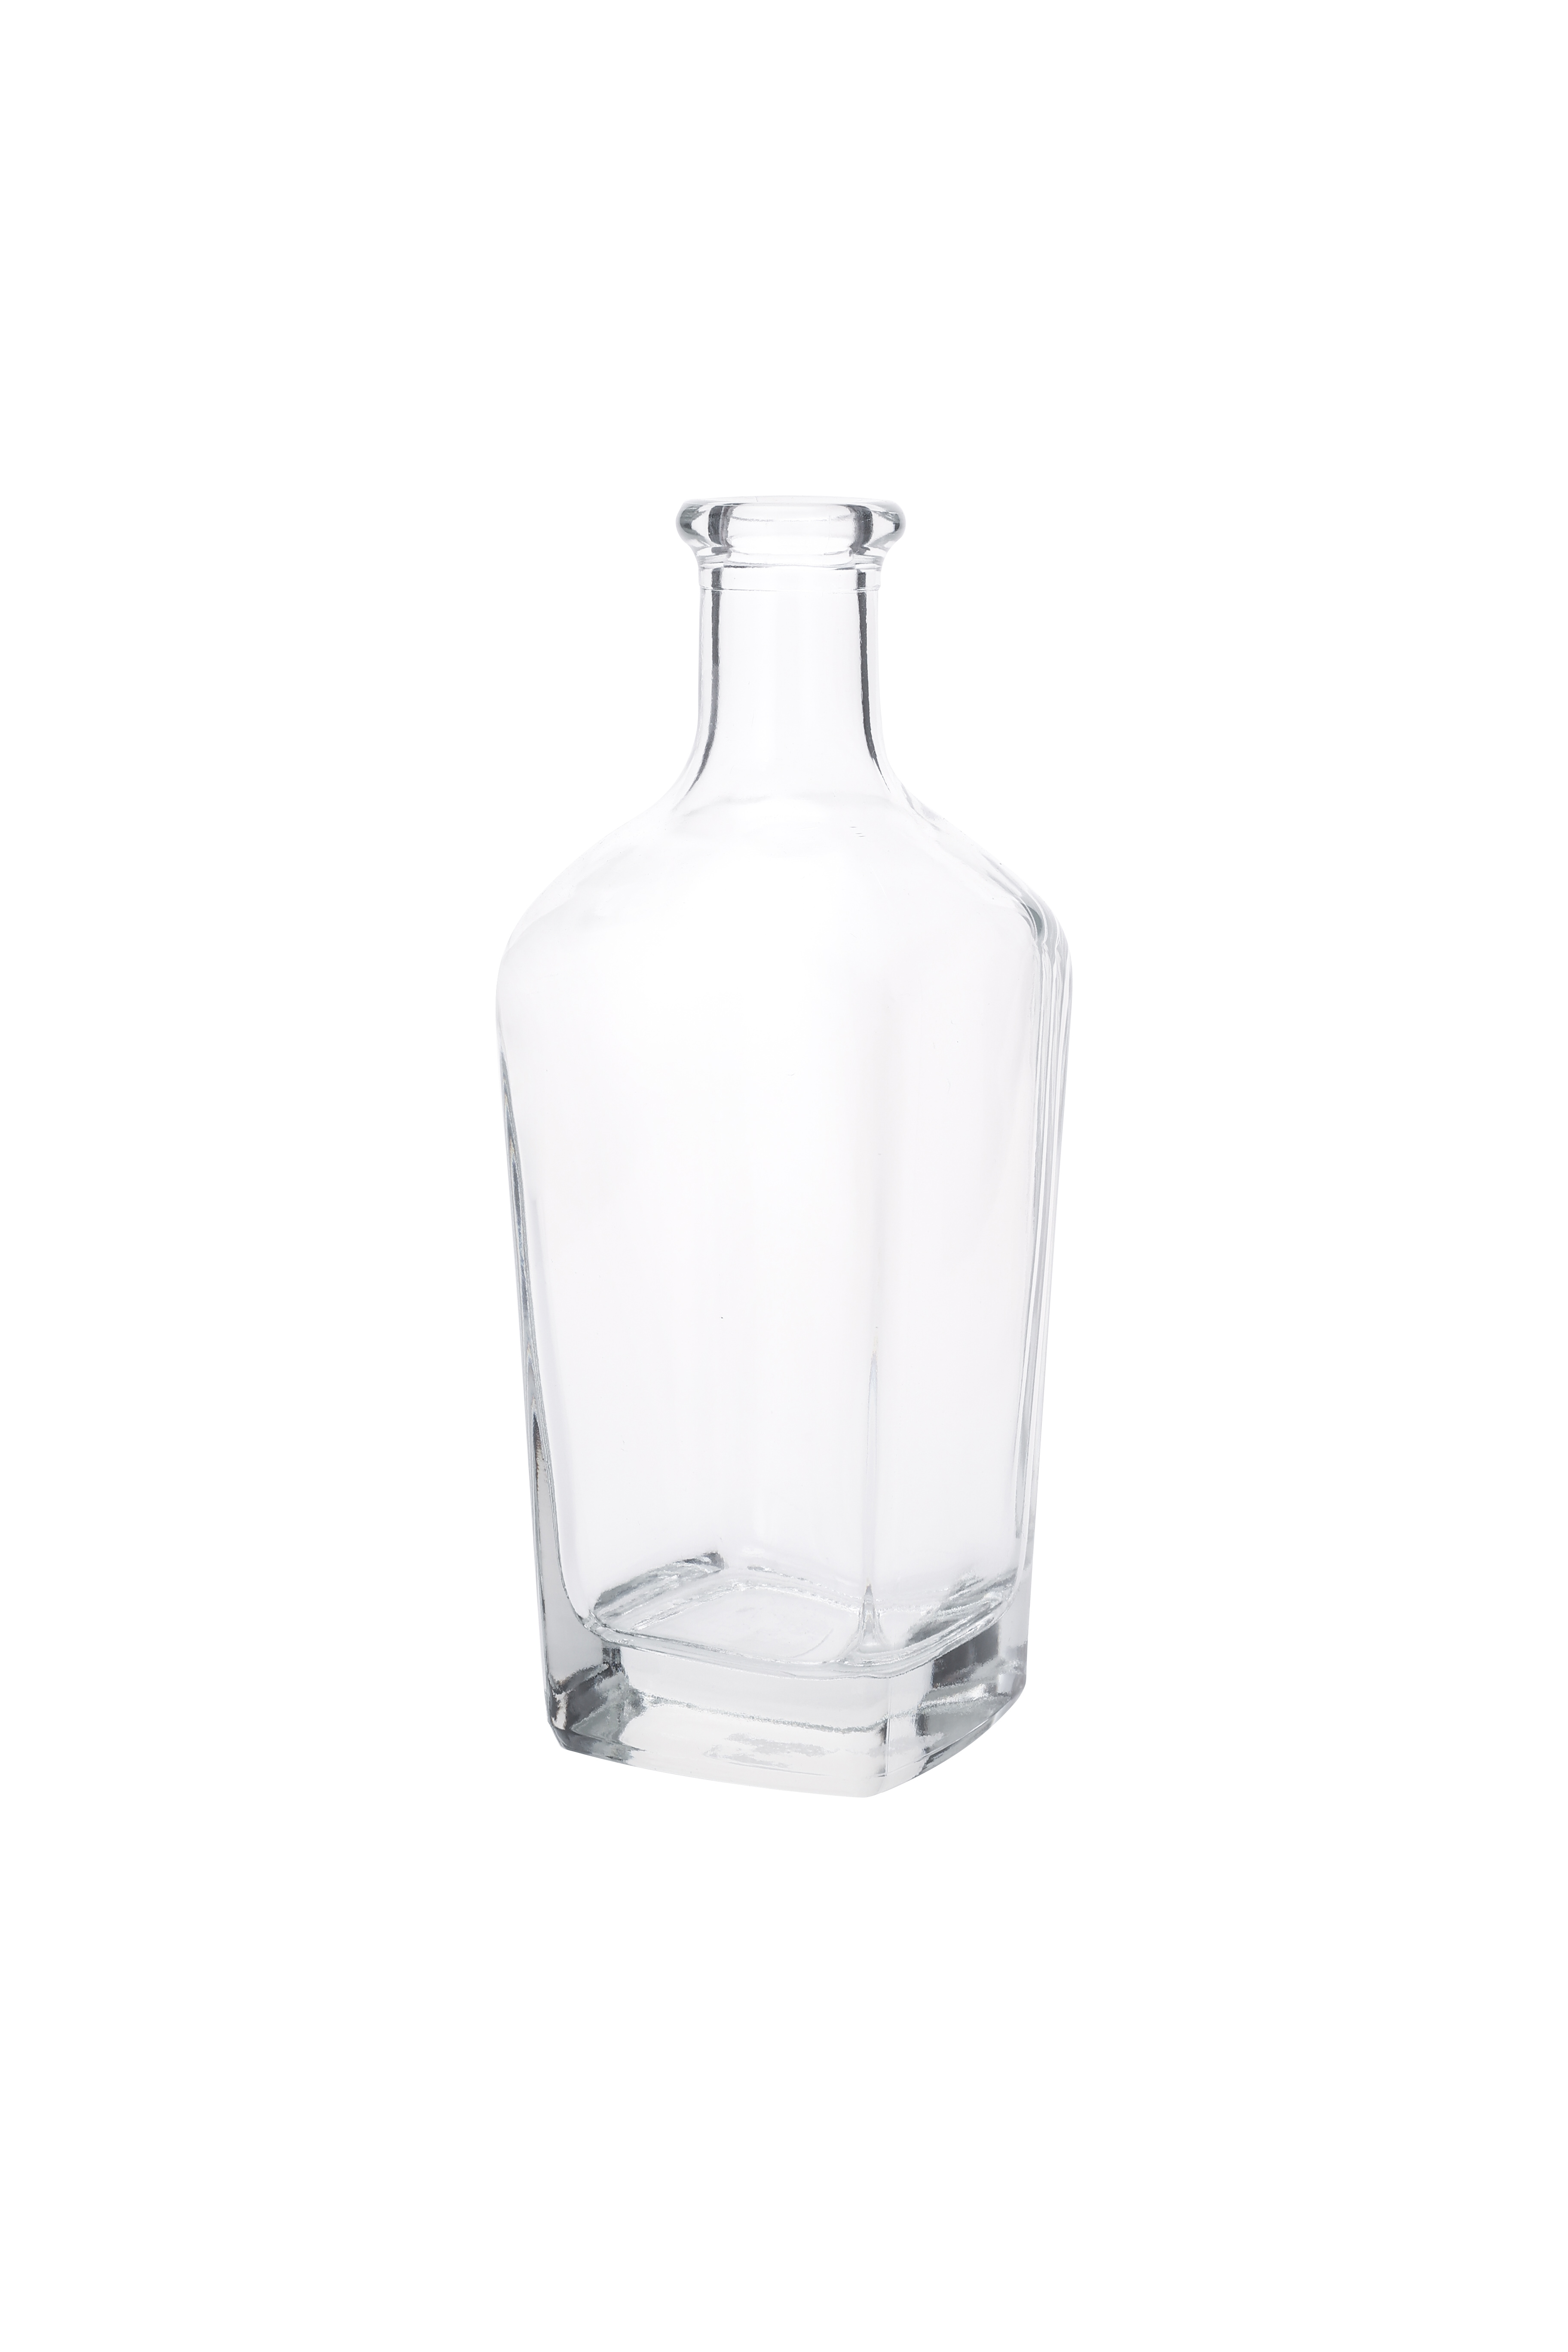 Crystal Empty Bottles Glass Liquor Wine Bottle